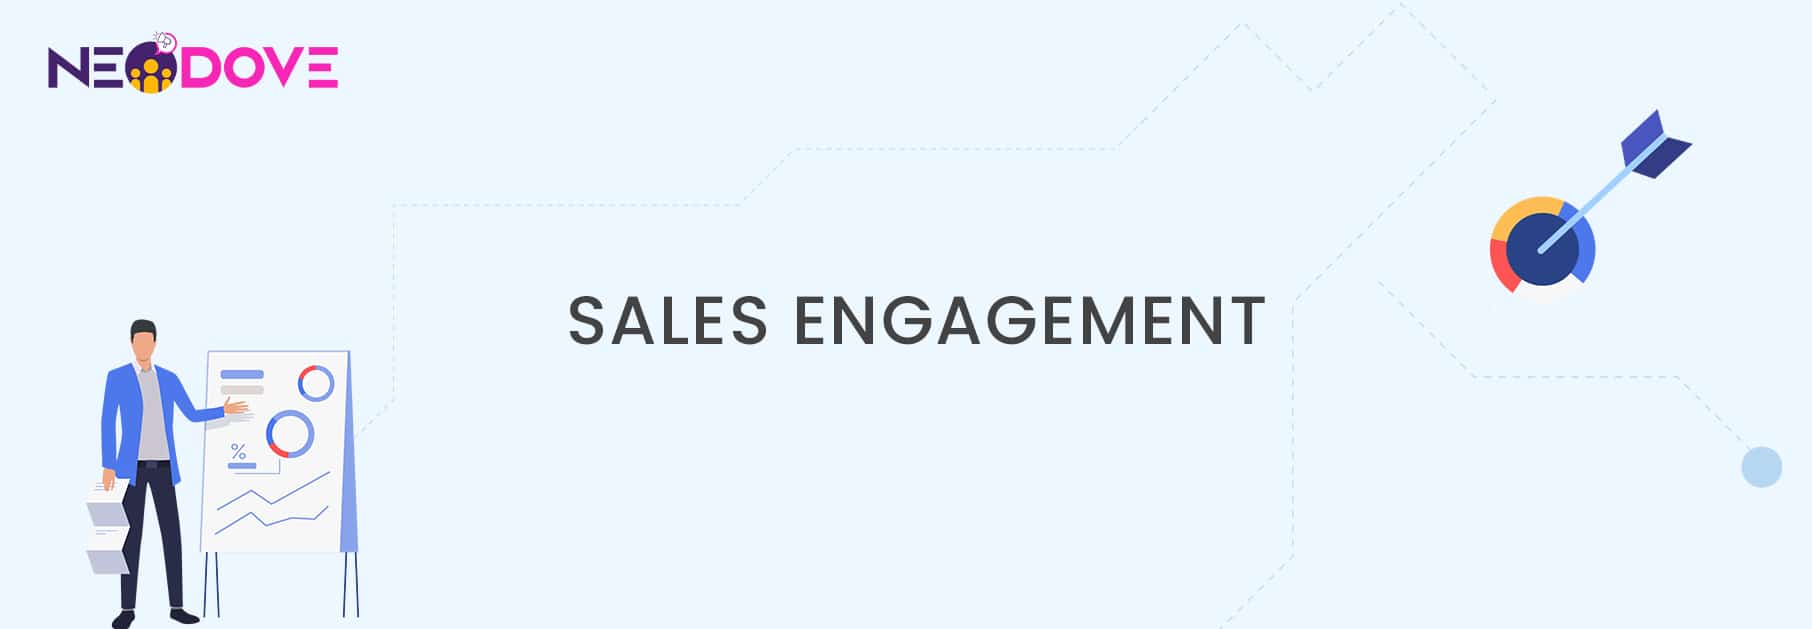 Sales engagement